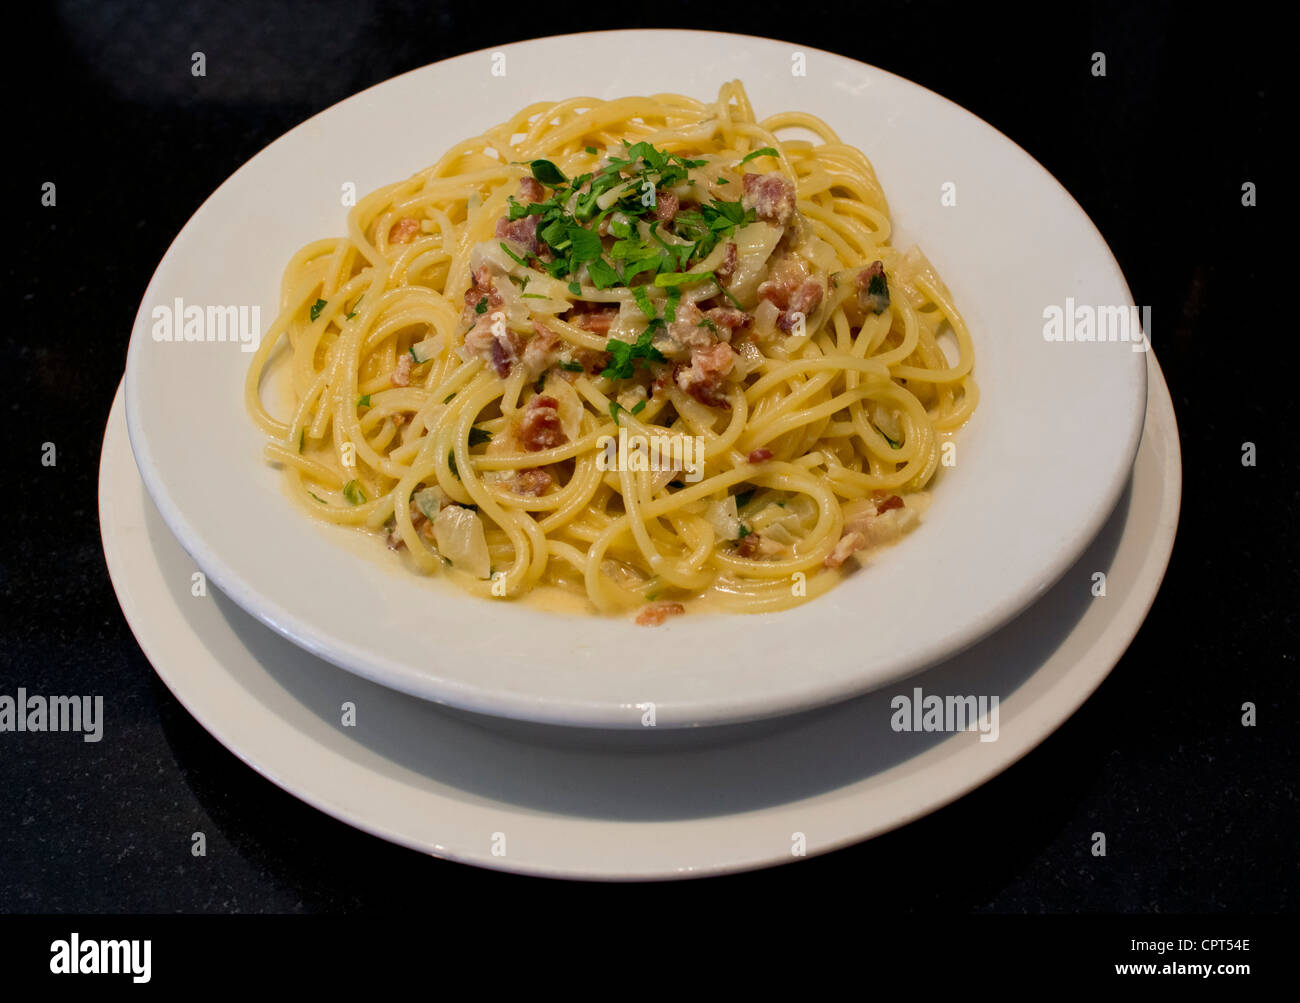 A serving of Spaghetti alla Carbonara, a pasta dish Stock Photo